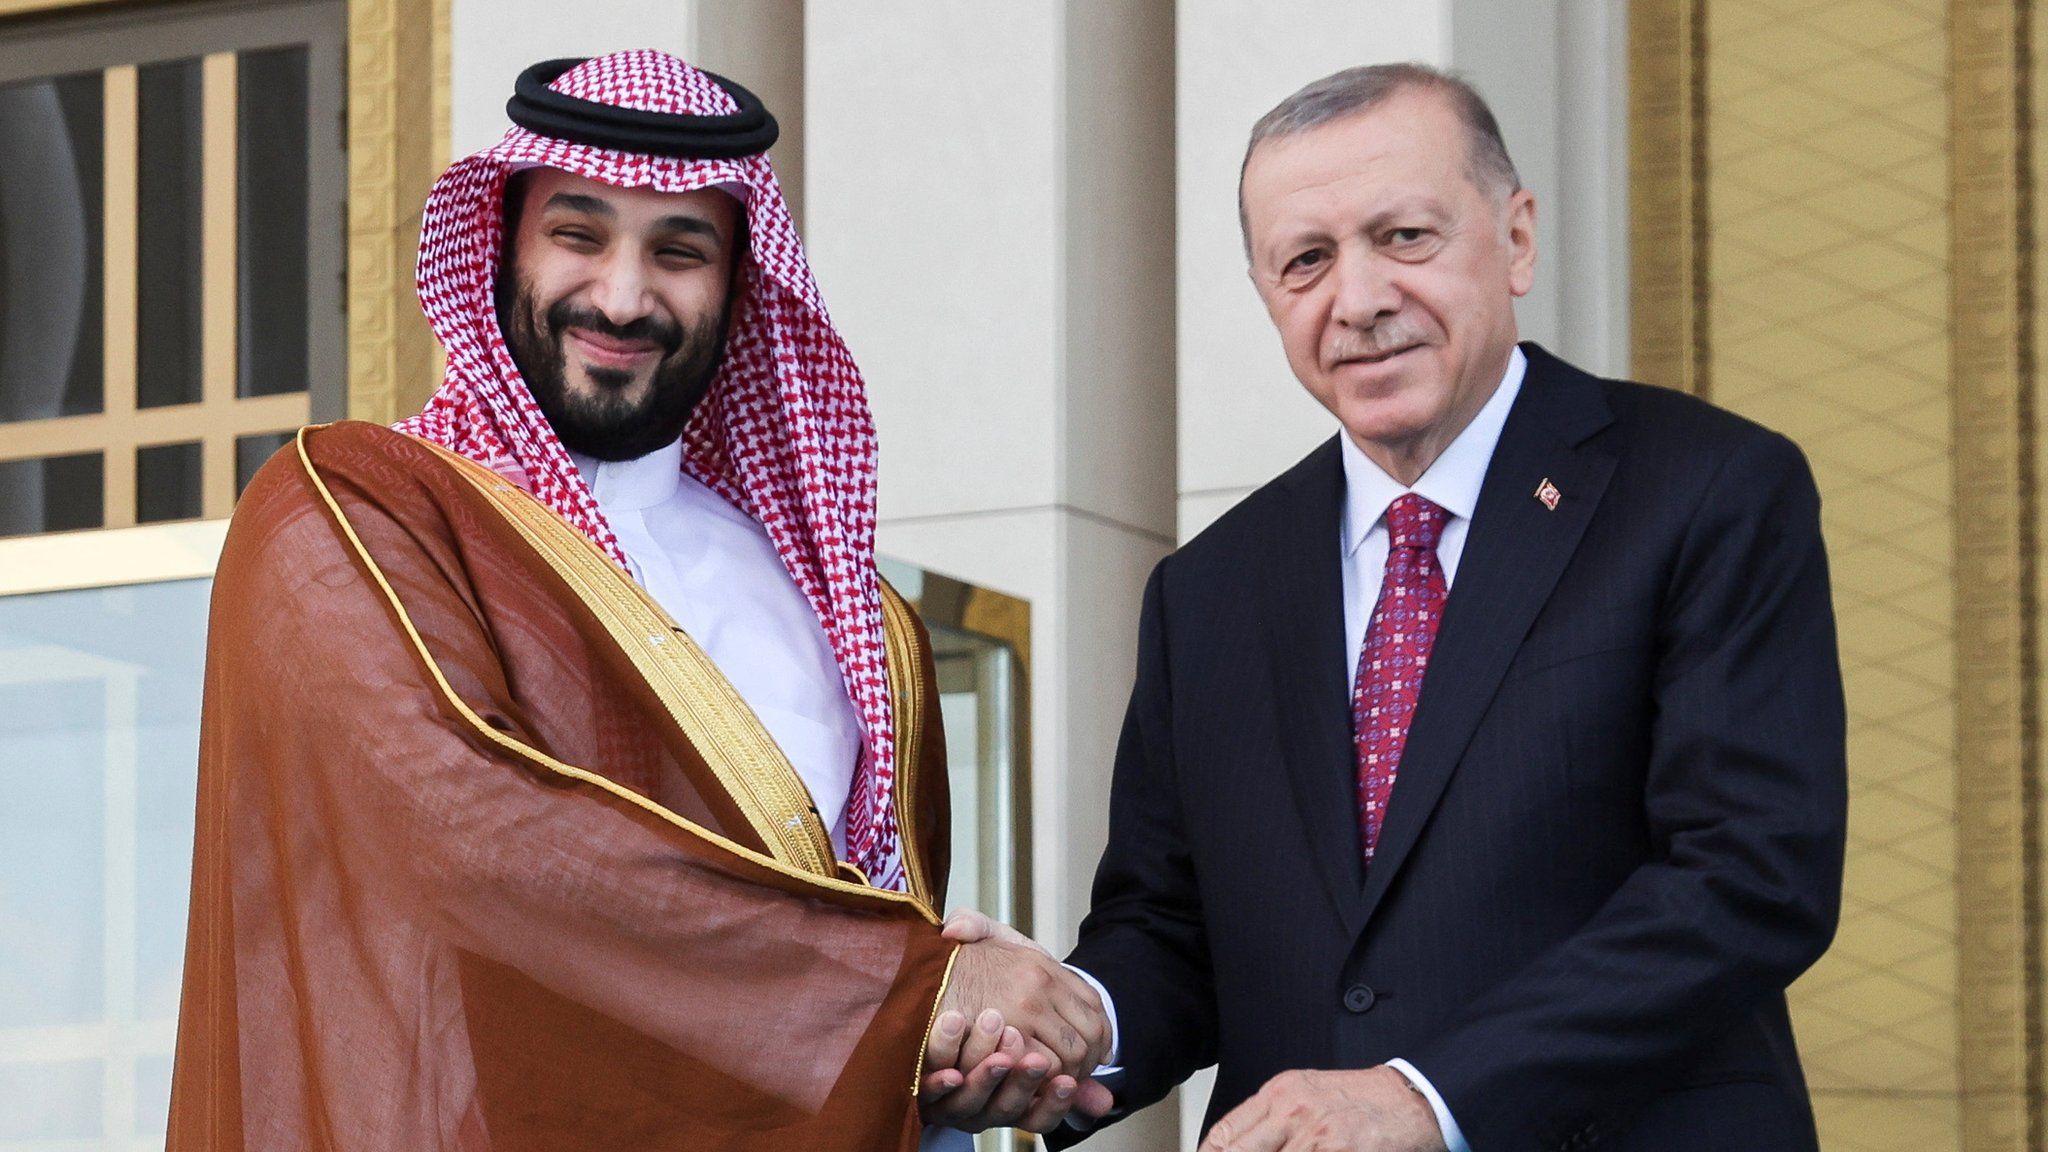 Наследный принц Саудовской Аравии Мохаммед бин Салман (слева) обменивается рукопожатием с президентом Турции Реджепом Тайипом Эрдоганом (справа) в Анкаре, Турция (22 июня 2022 г.)